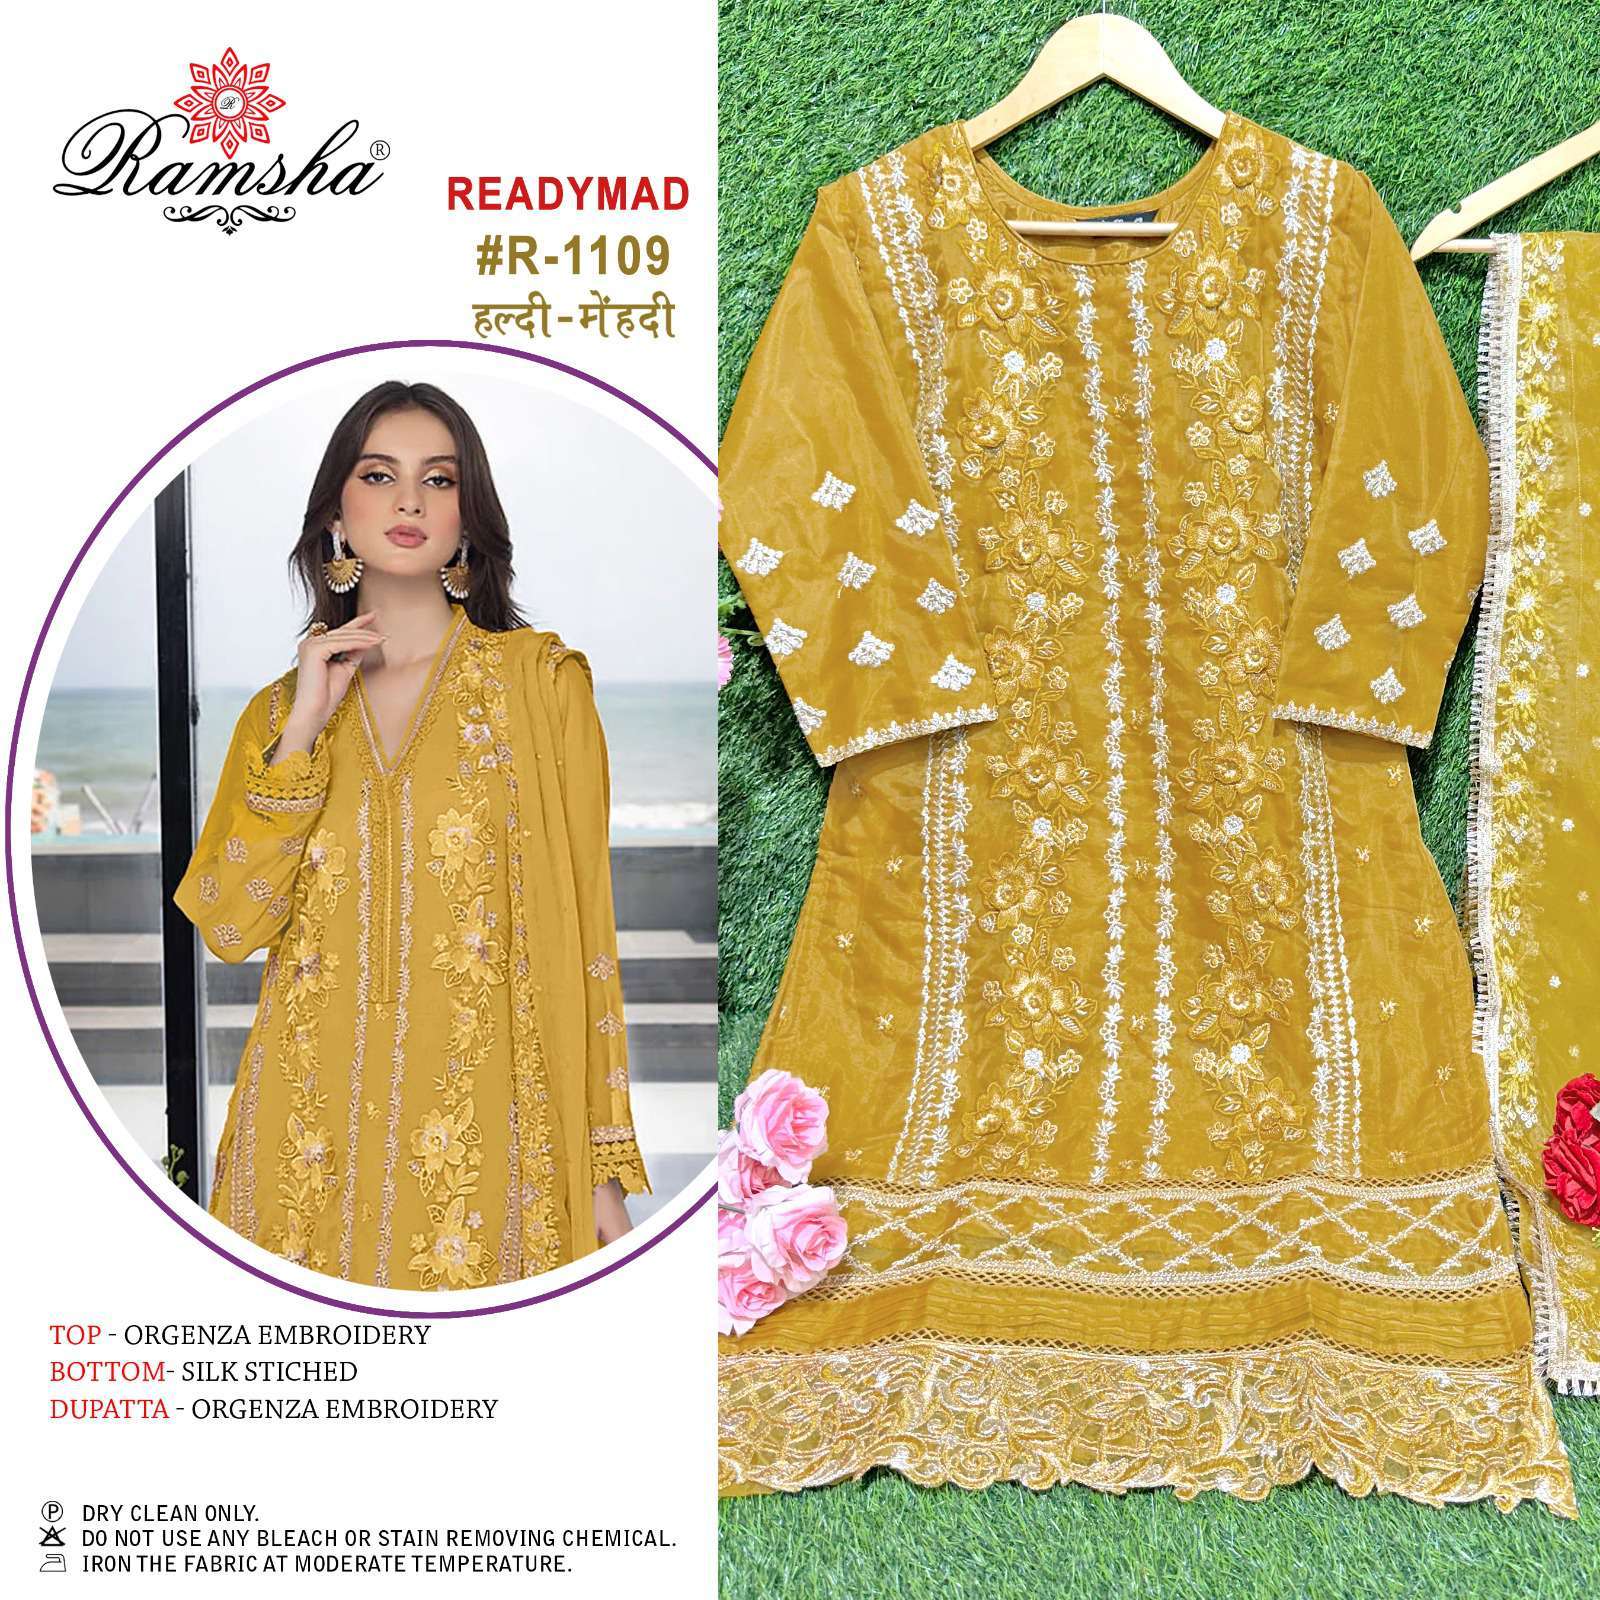 Ramsha R 1109 Colors Haldi Mehndi Pakistani Readymade Suit Catalog Dealers